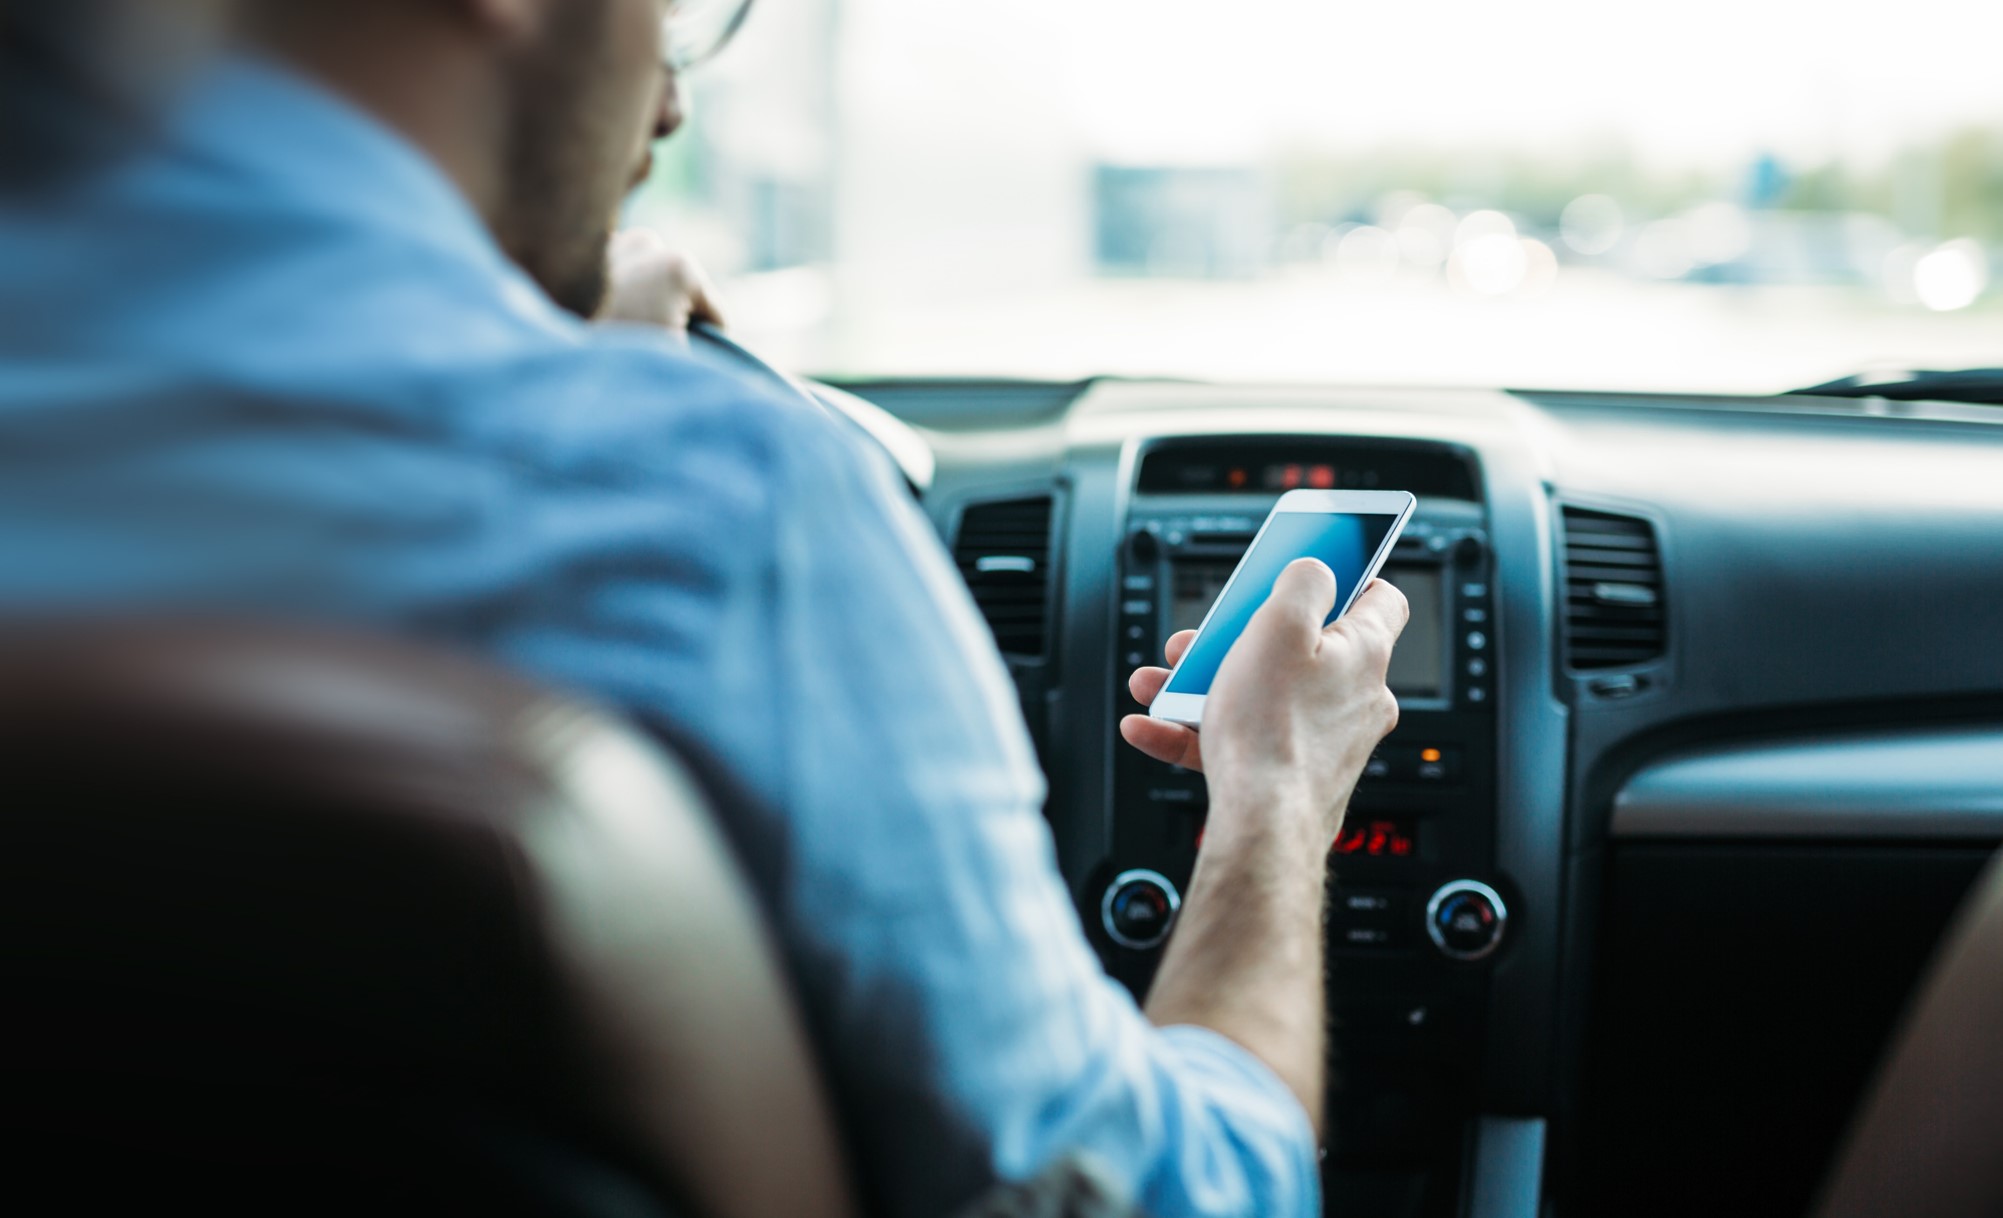 Las distracciones al volante, como mirar al teléfono móvil, causan 1 de cada 3 accidentes mortales en España. Conoce más datos del Estudio de la Fundación de Línea Directa